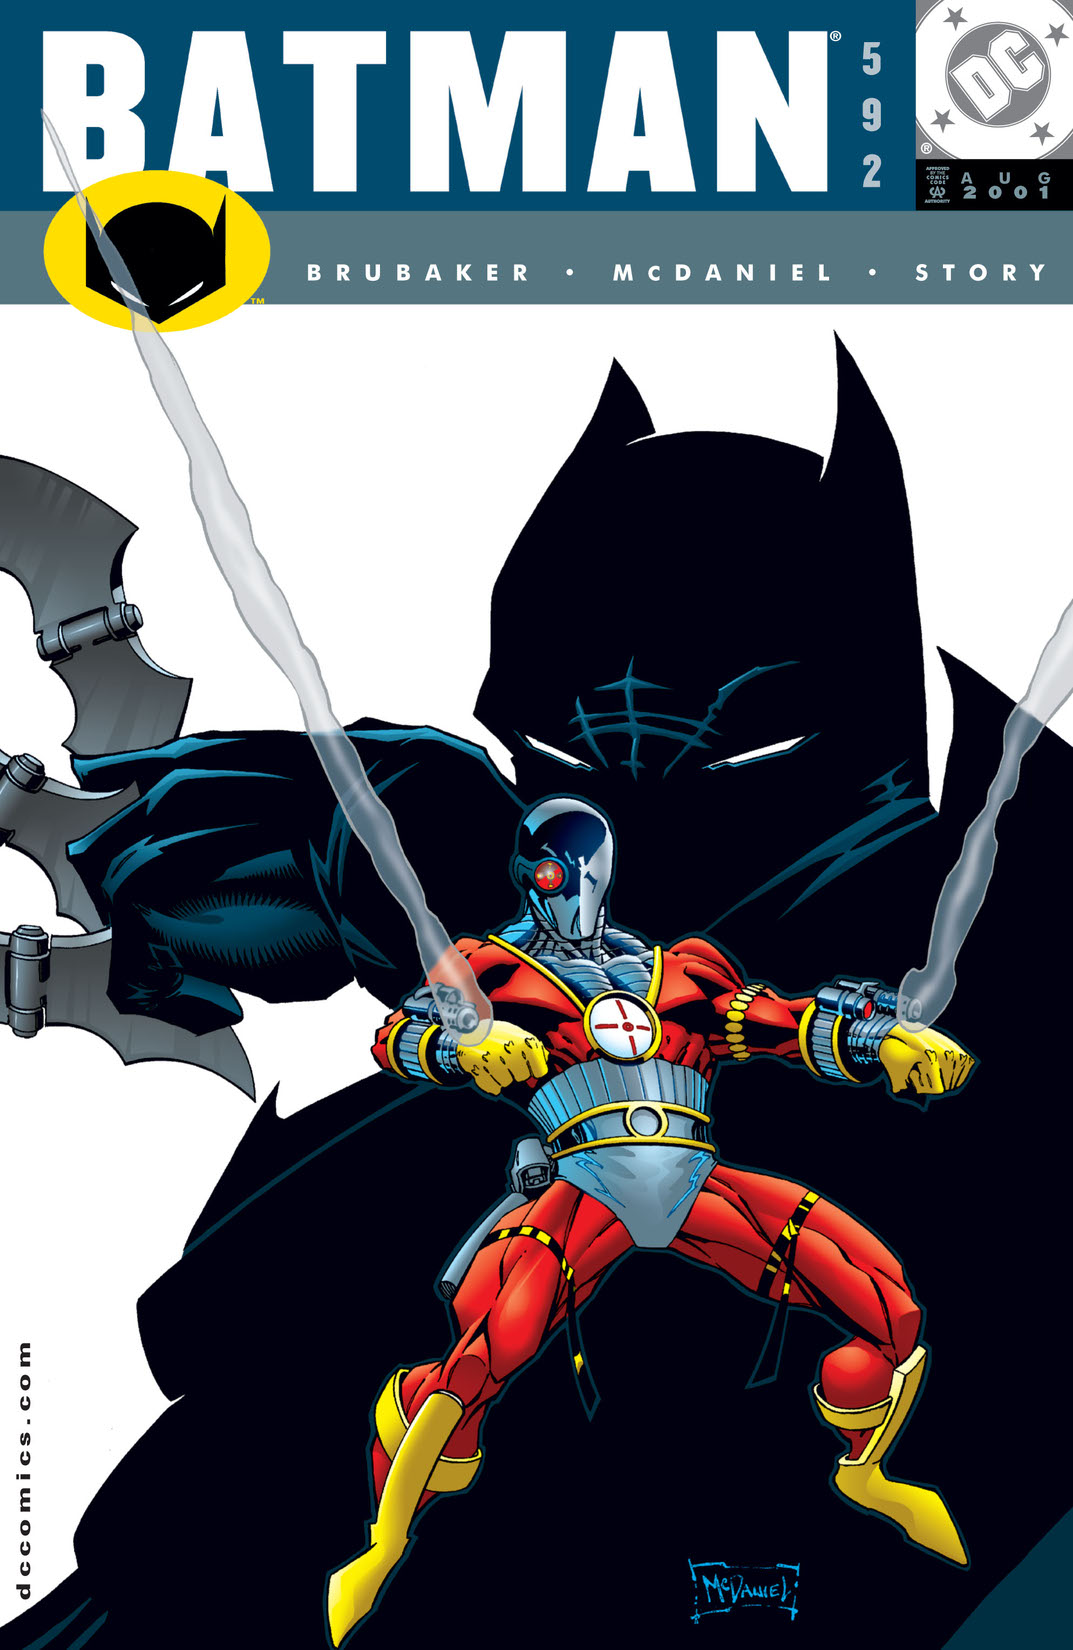 Batman (1940-) #592 preview images